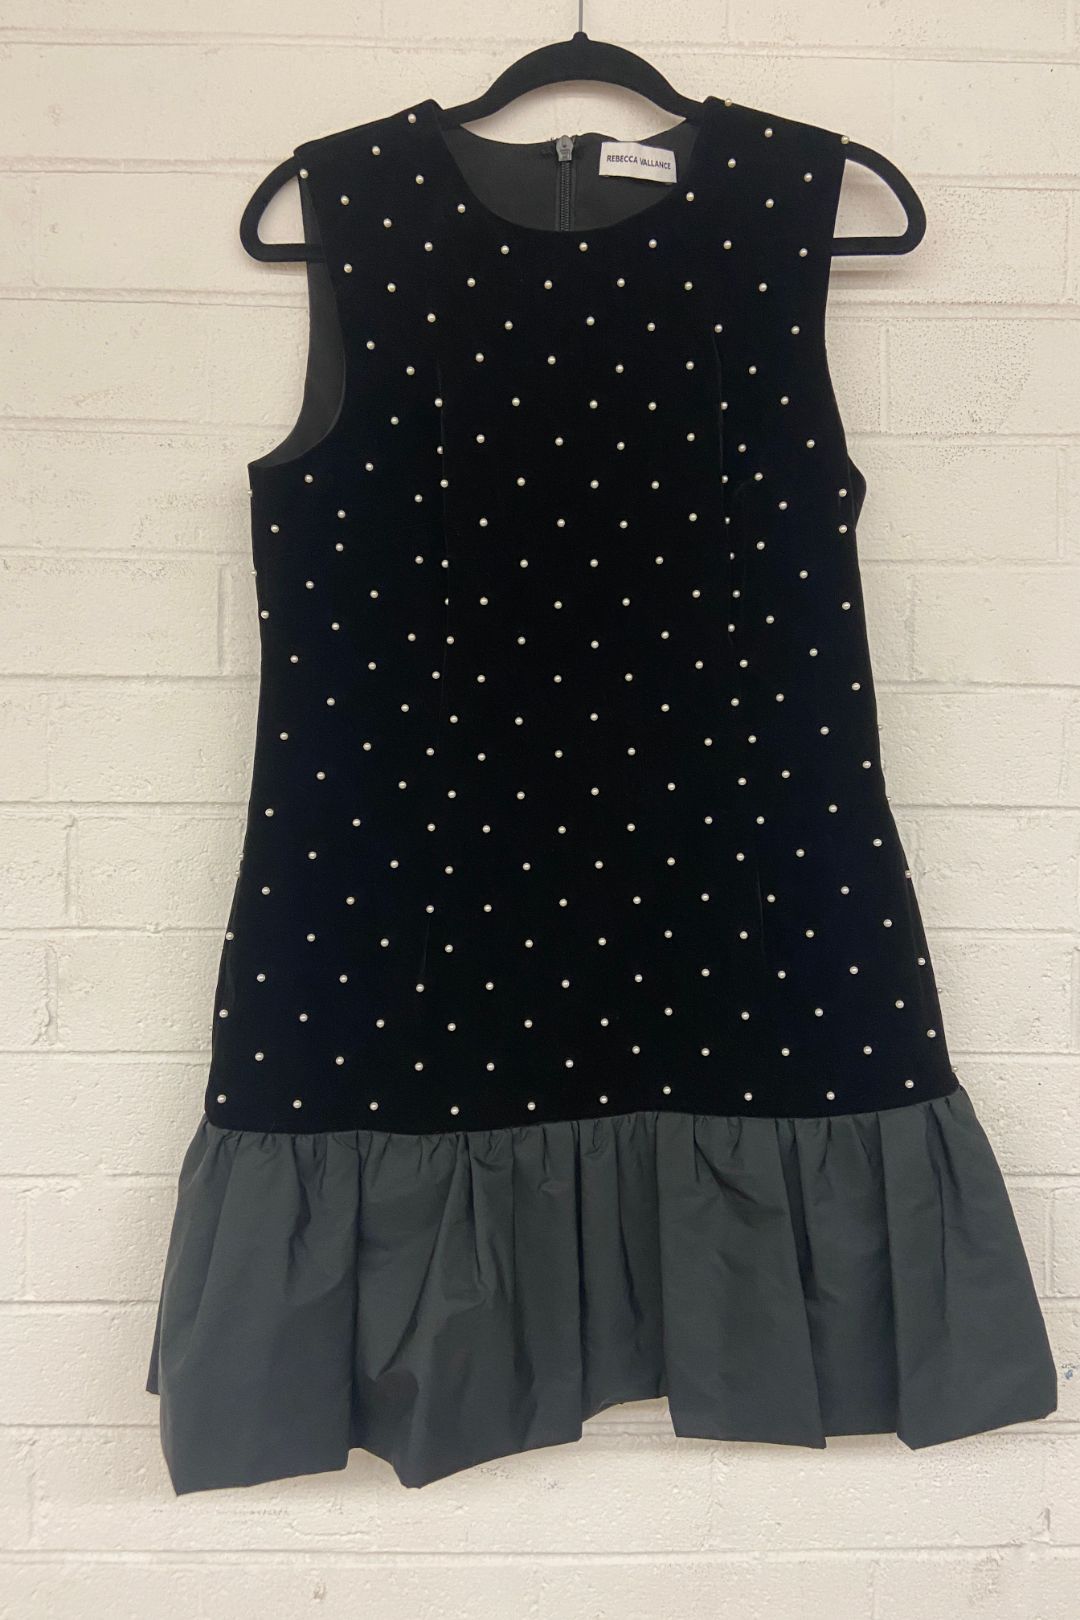 Rebecca Vallance Hope Velvet Embellished Mini Dress in Black